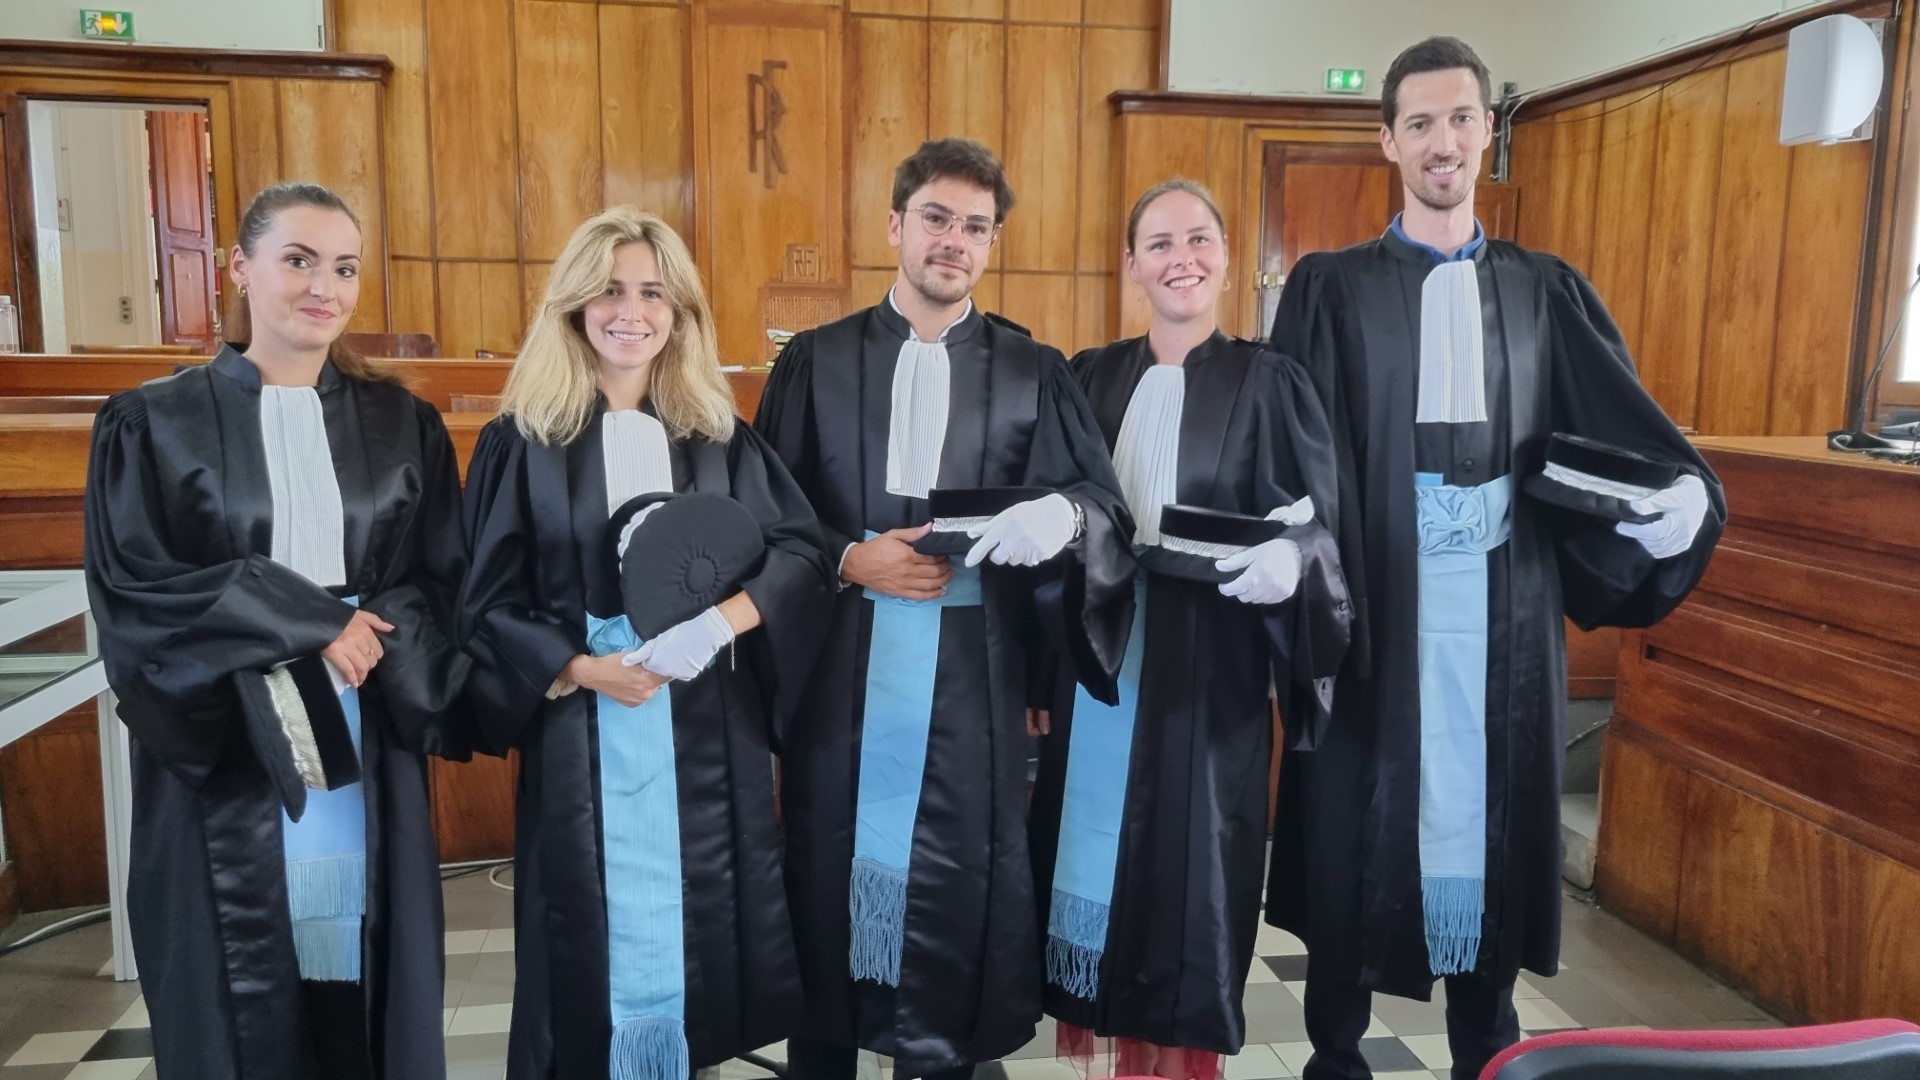     La justice fait sa rentrée, de nouveaux magistrats installés en Guadeloupe

